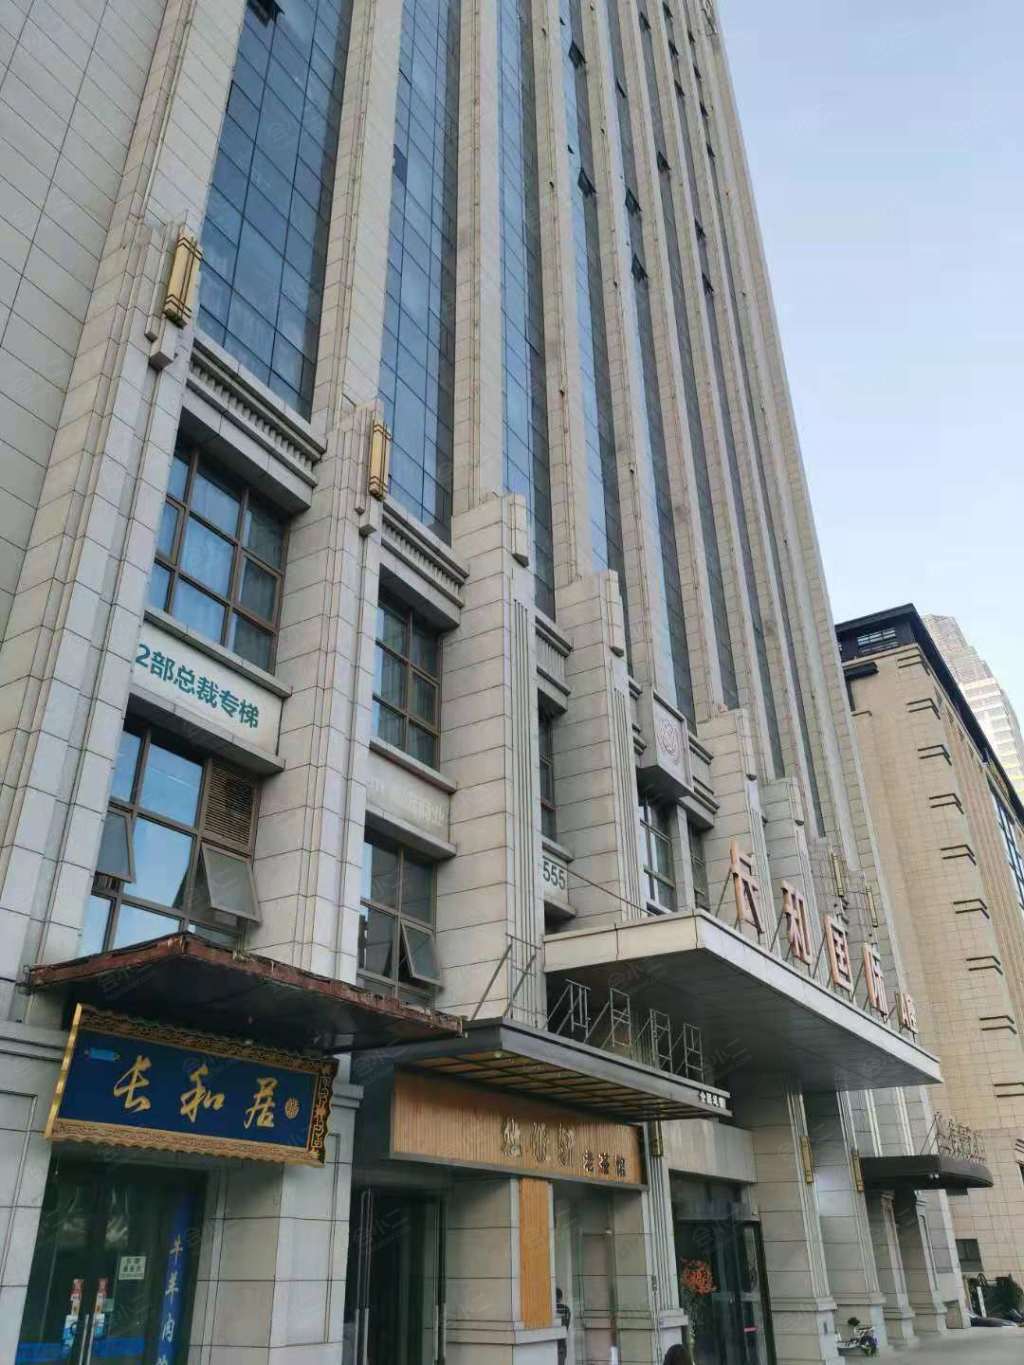 北京格菲酒店图片